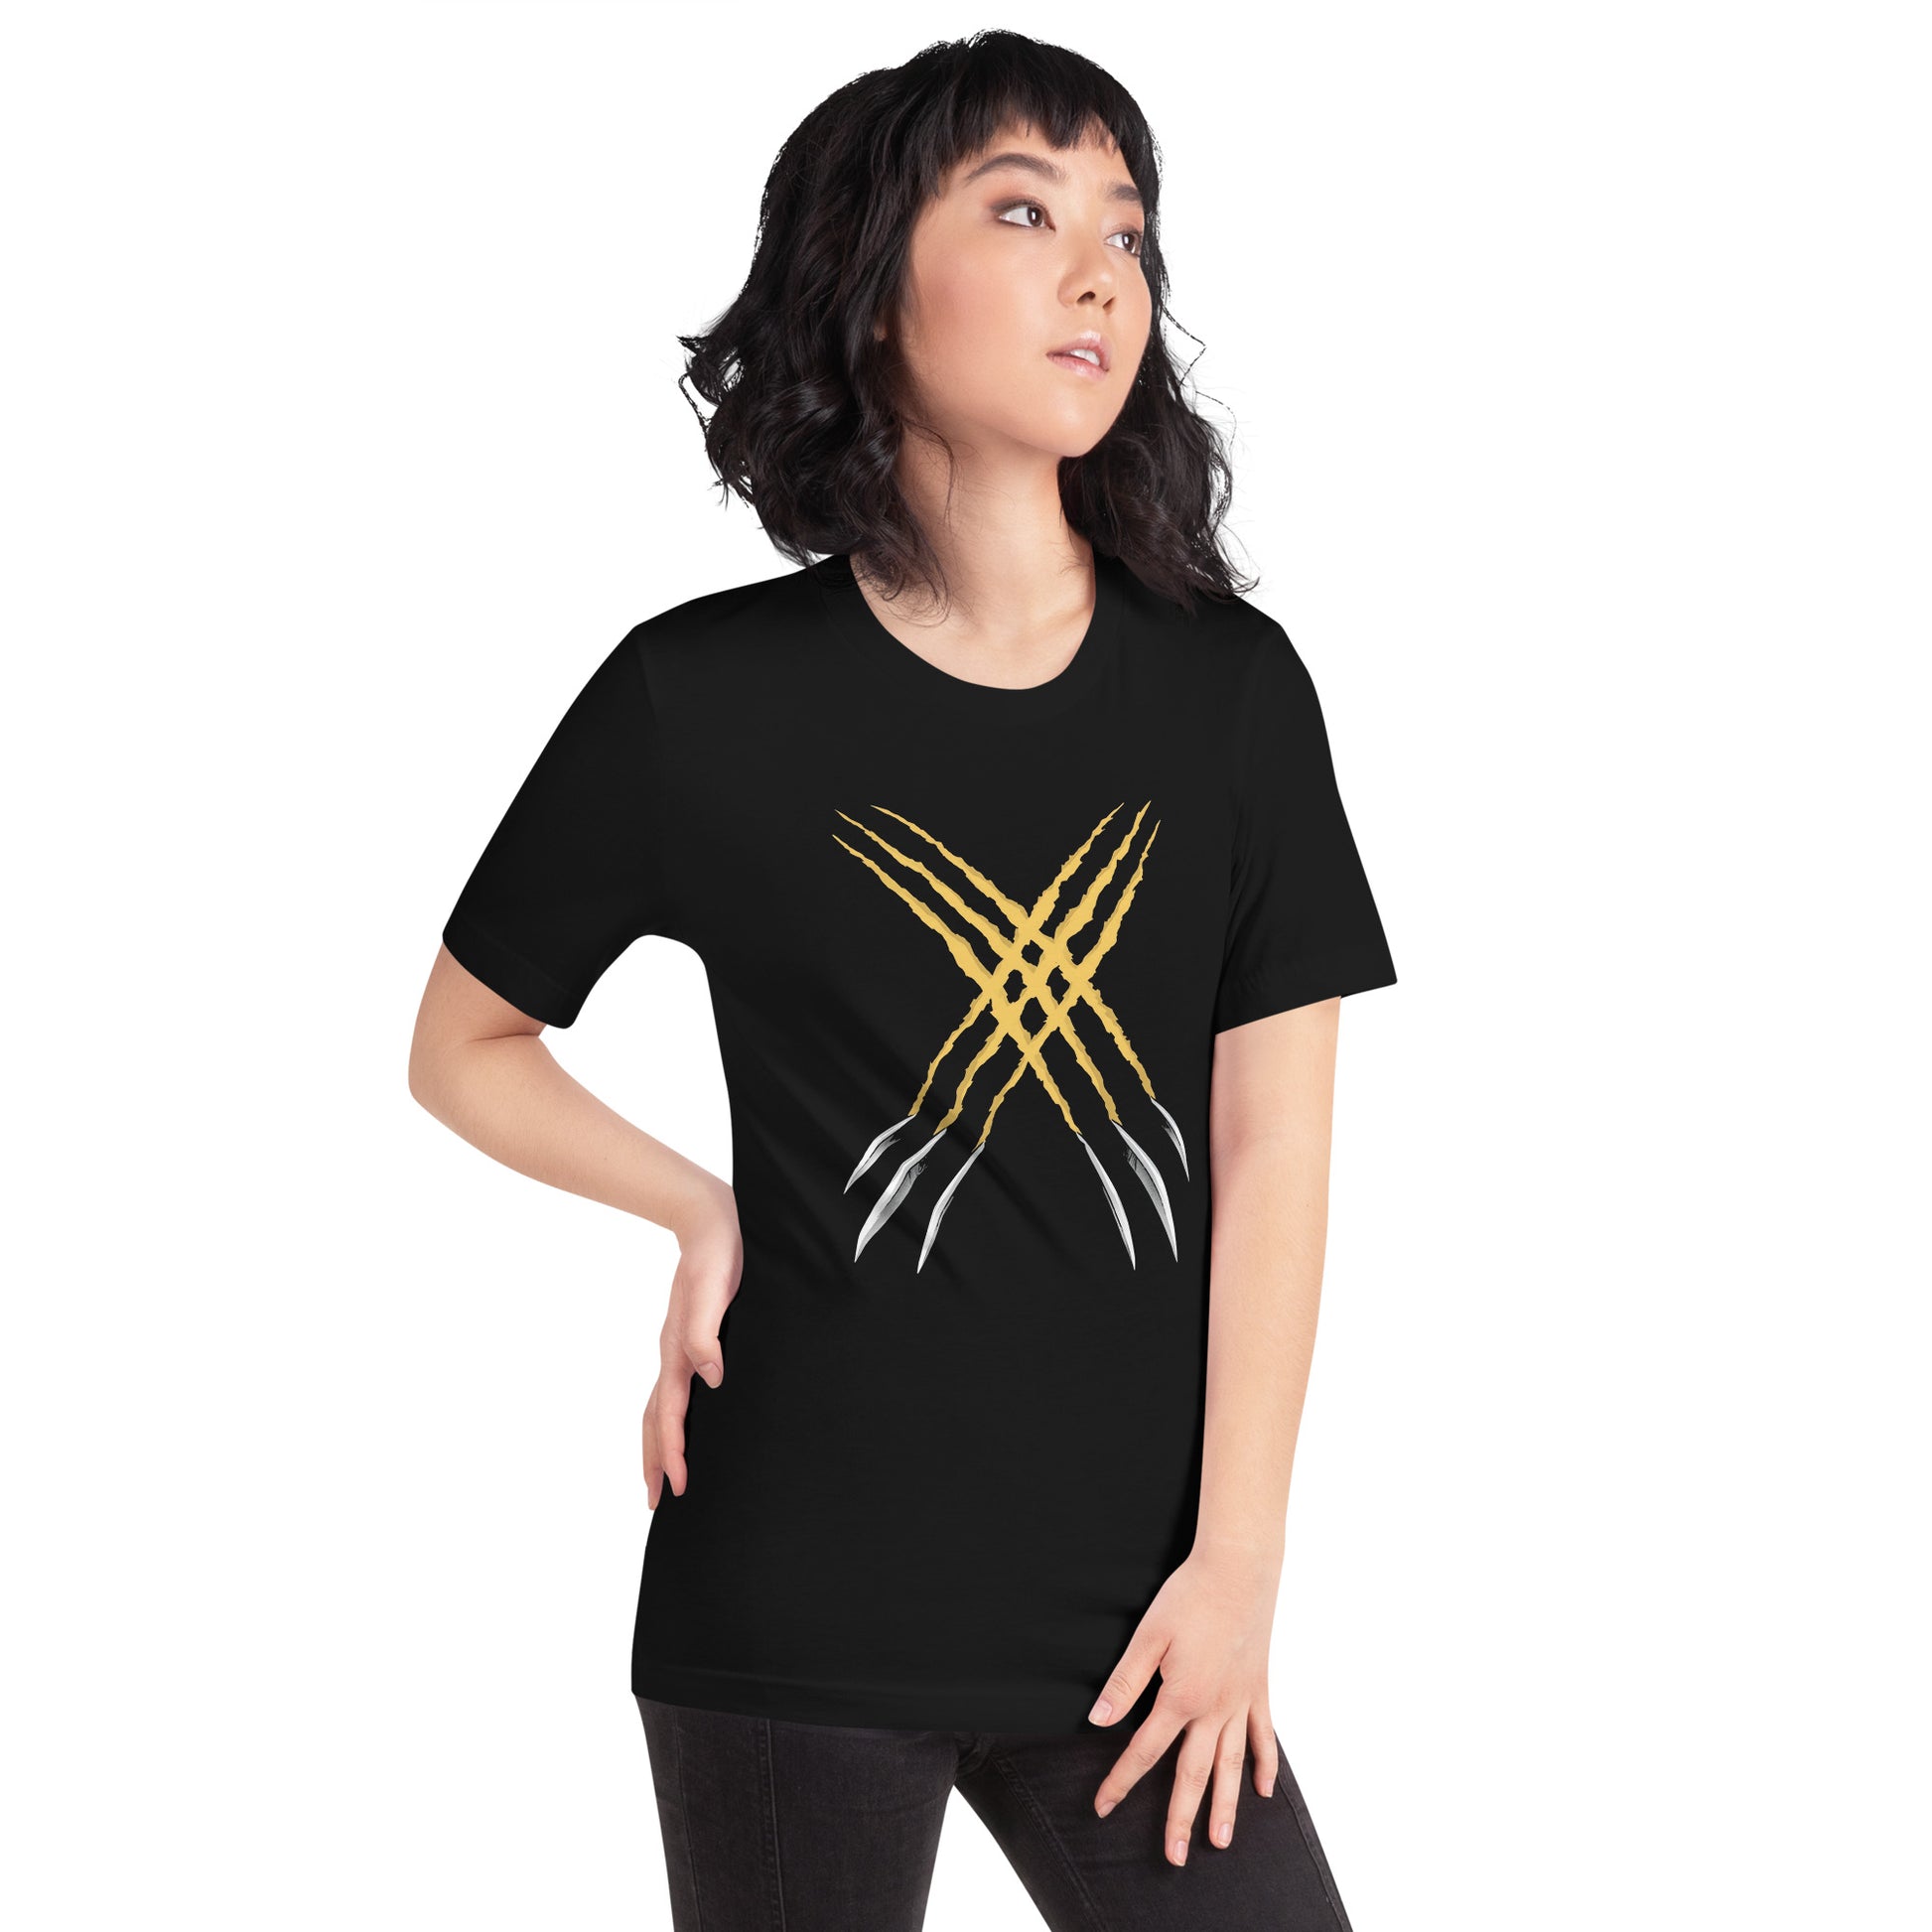 ¡Compra el mejor merchandising en Superstar! Encuentra diseños únicos y de alta calidad, Playera de Adamantium X-Men